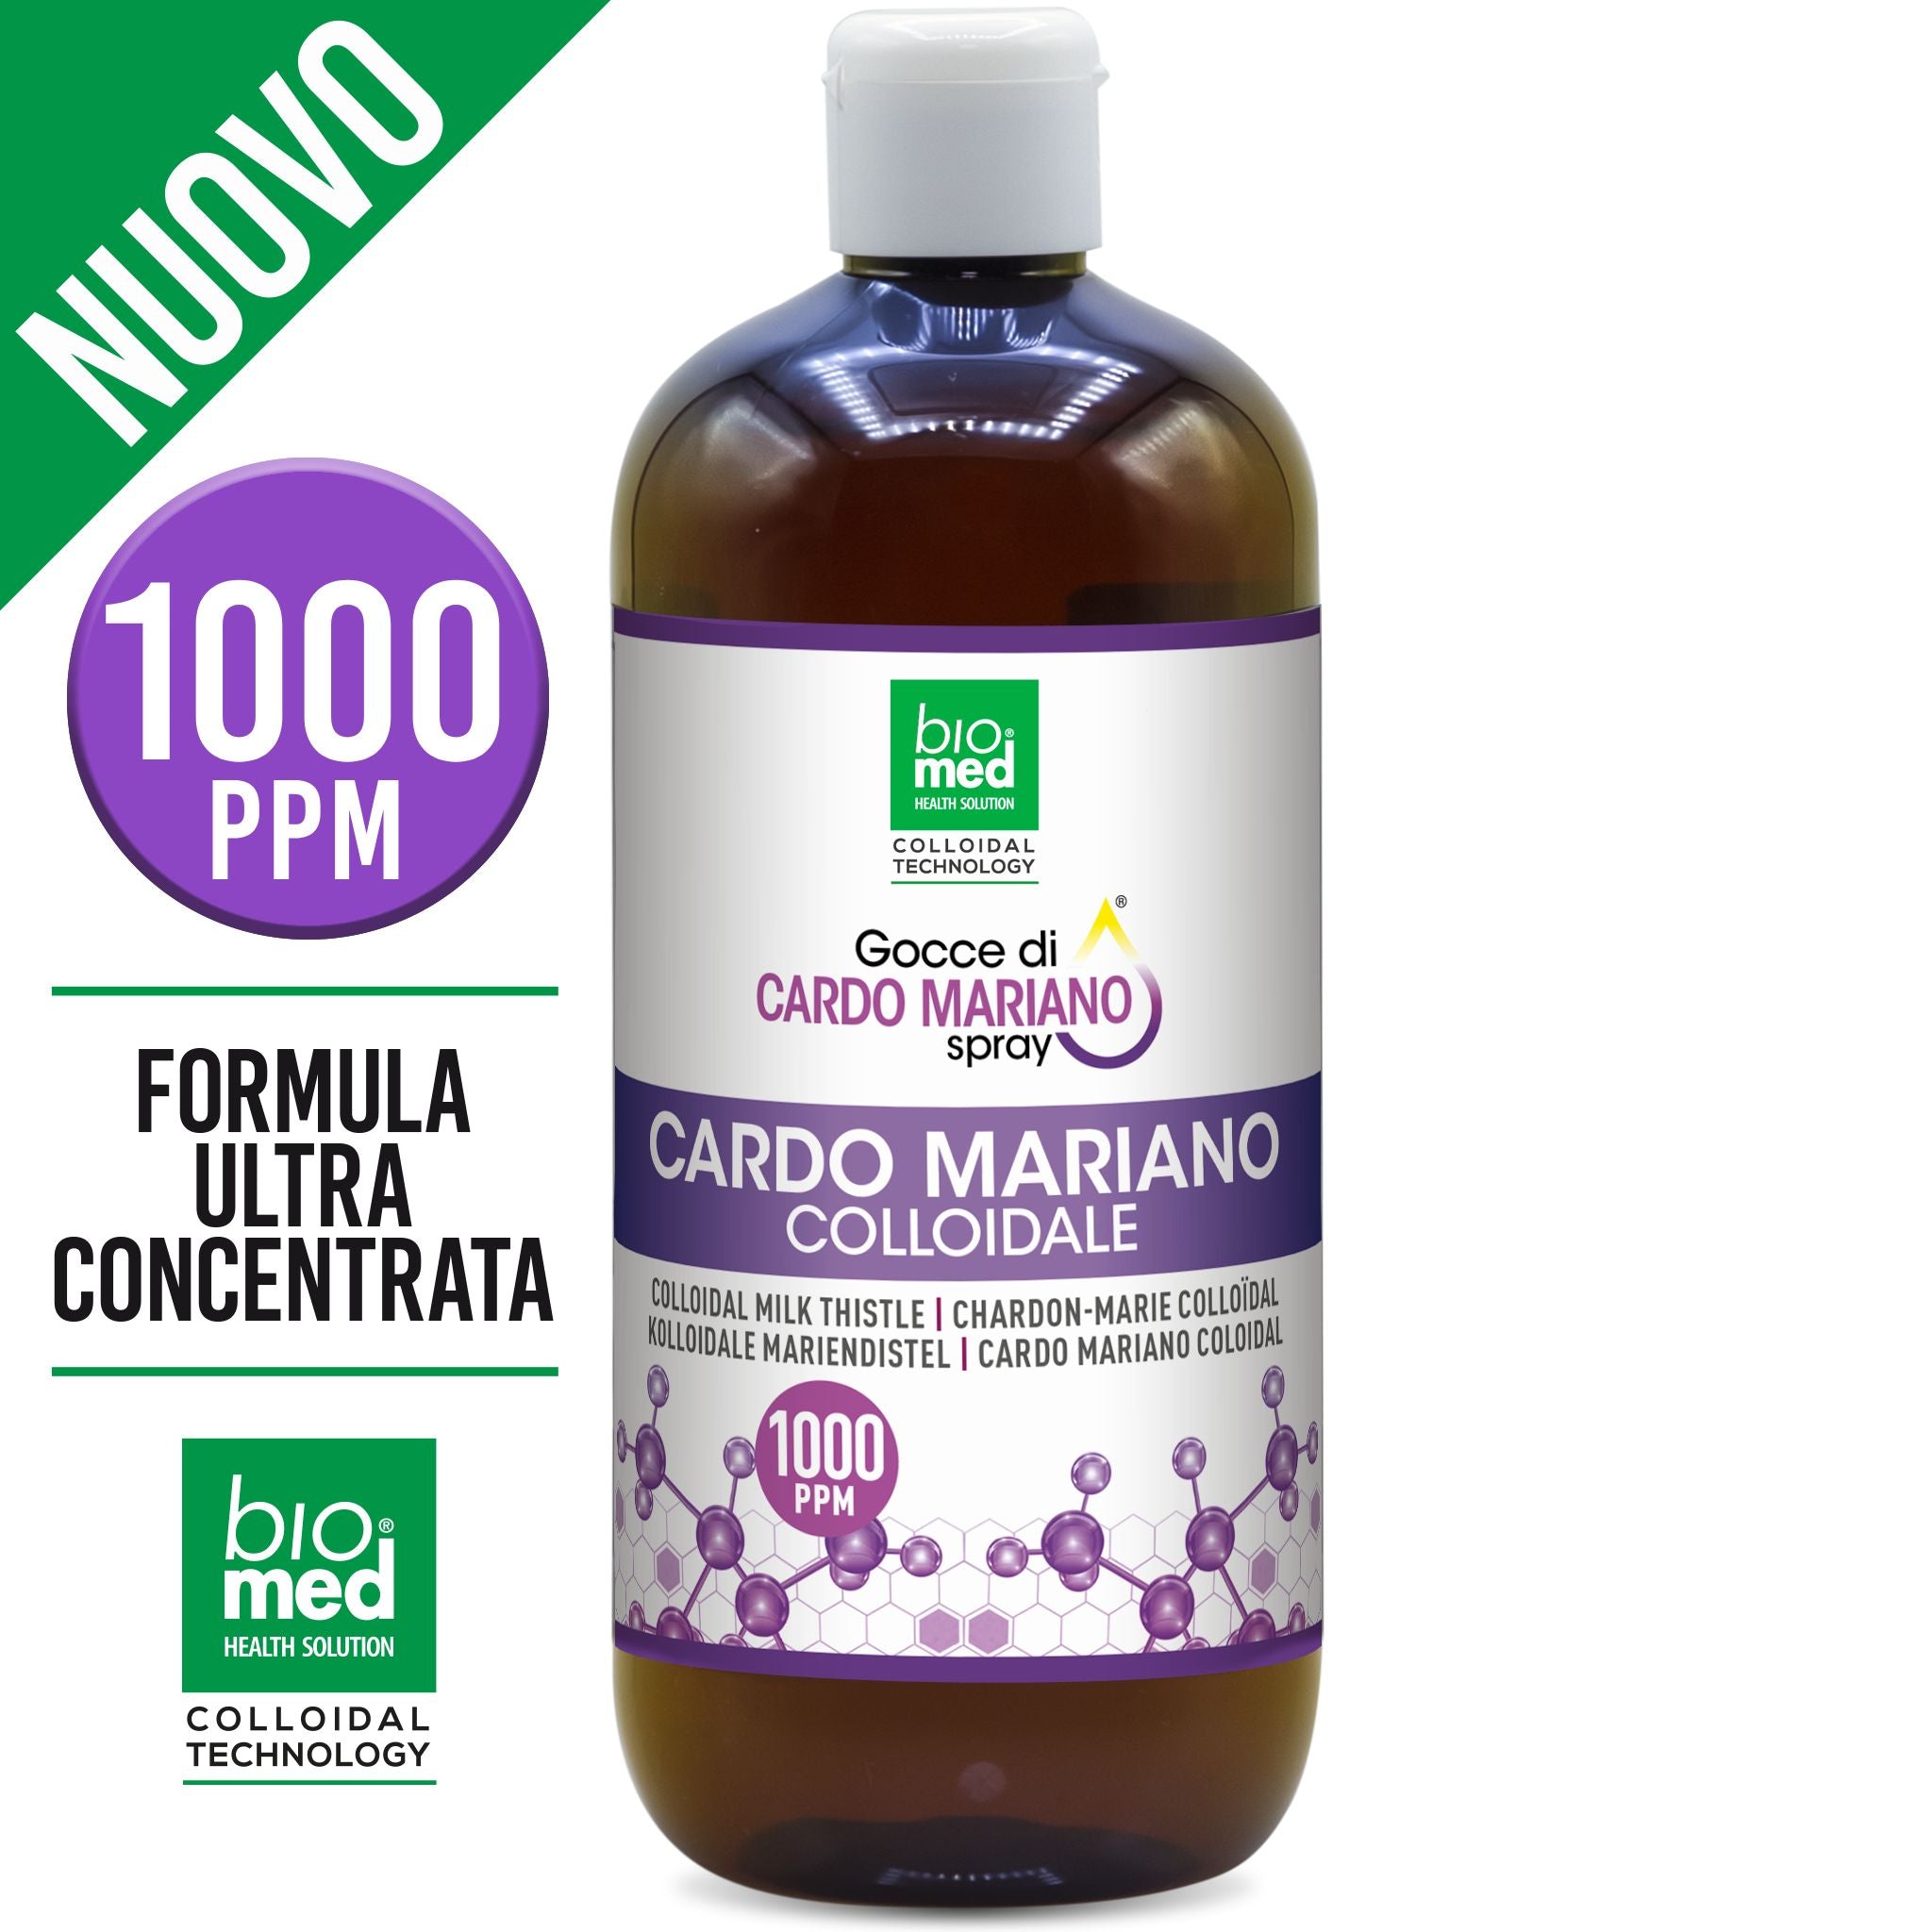 GOCCE DI CARDO MARIANO COLLOIDALE SPRAY ATTIVO BIOMED - 500 ML. - 1000 PPM